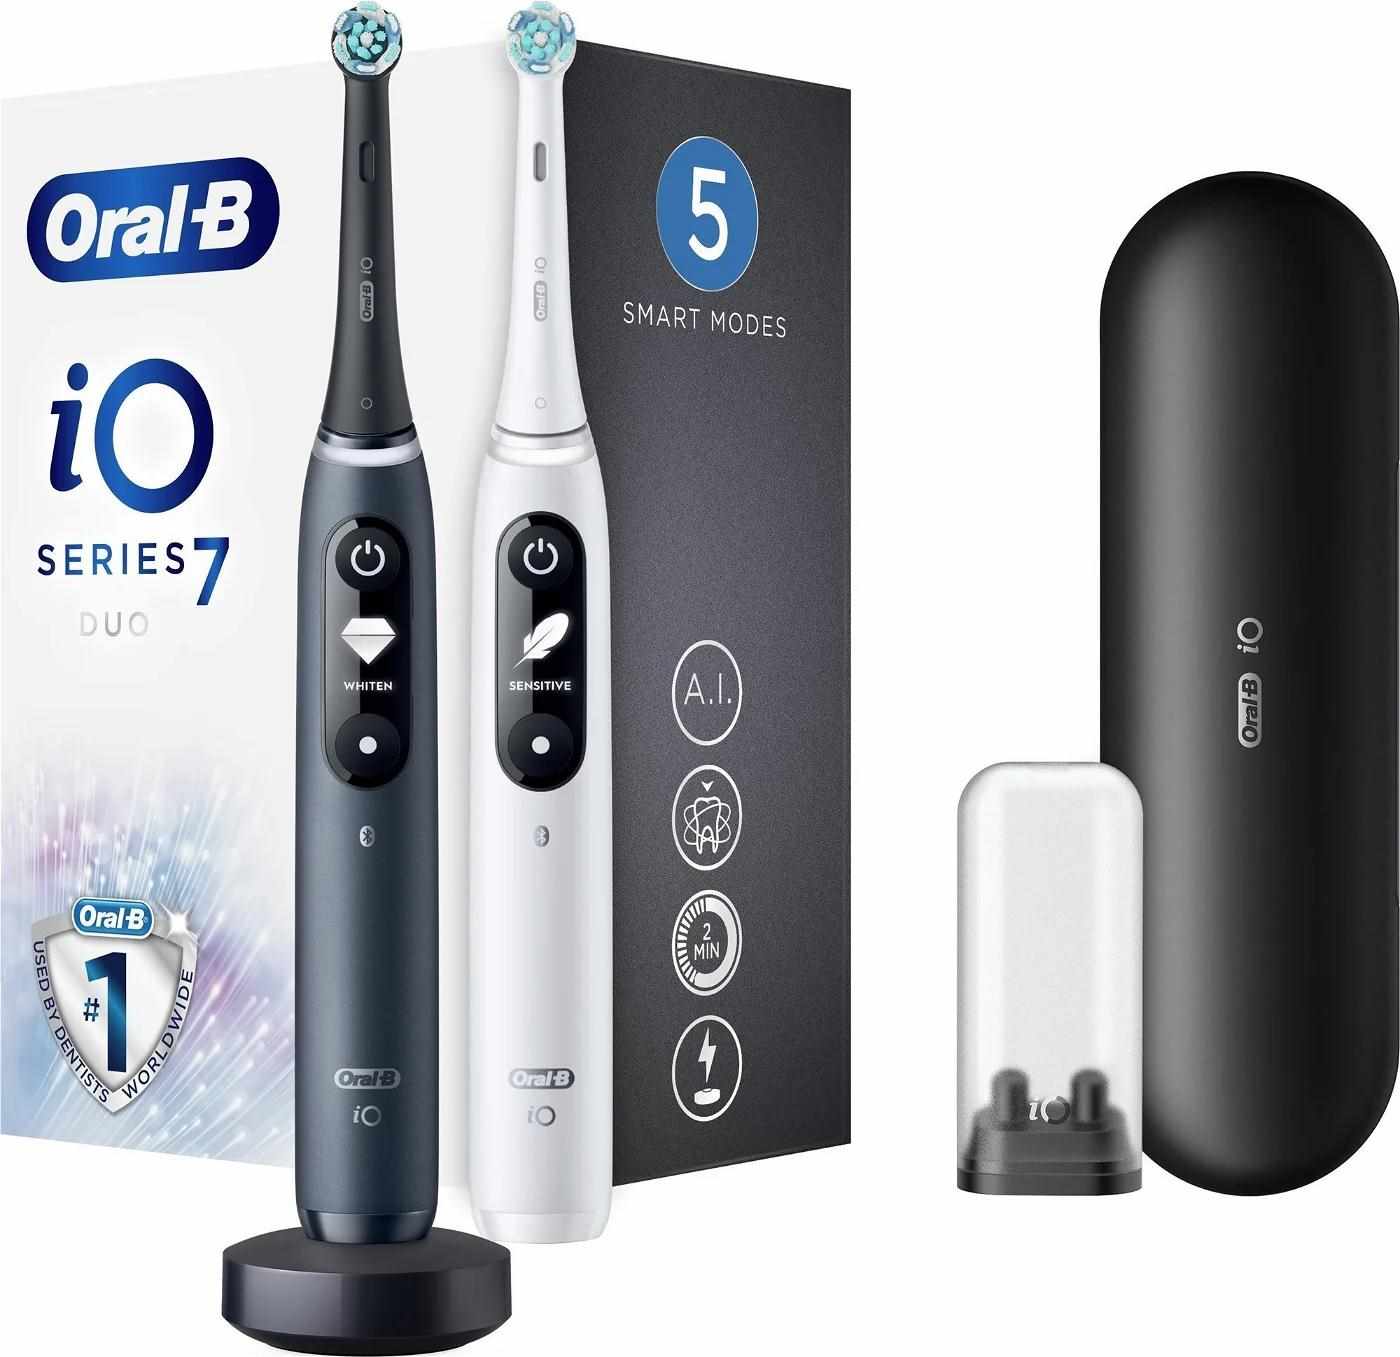 Oral-B iO Series 7 Duo Black Onyx & White Alabaster set elektrických zubních kartáčků,  5 režimů,  AI,  časovač4 